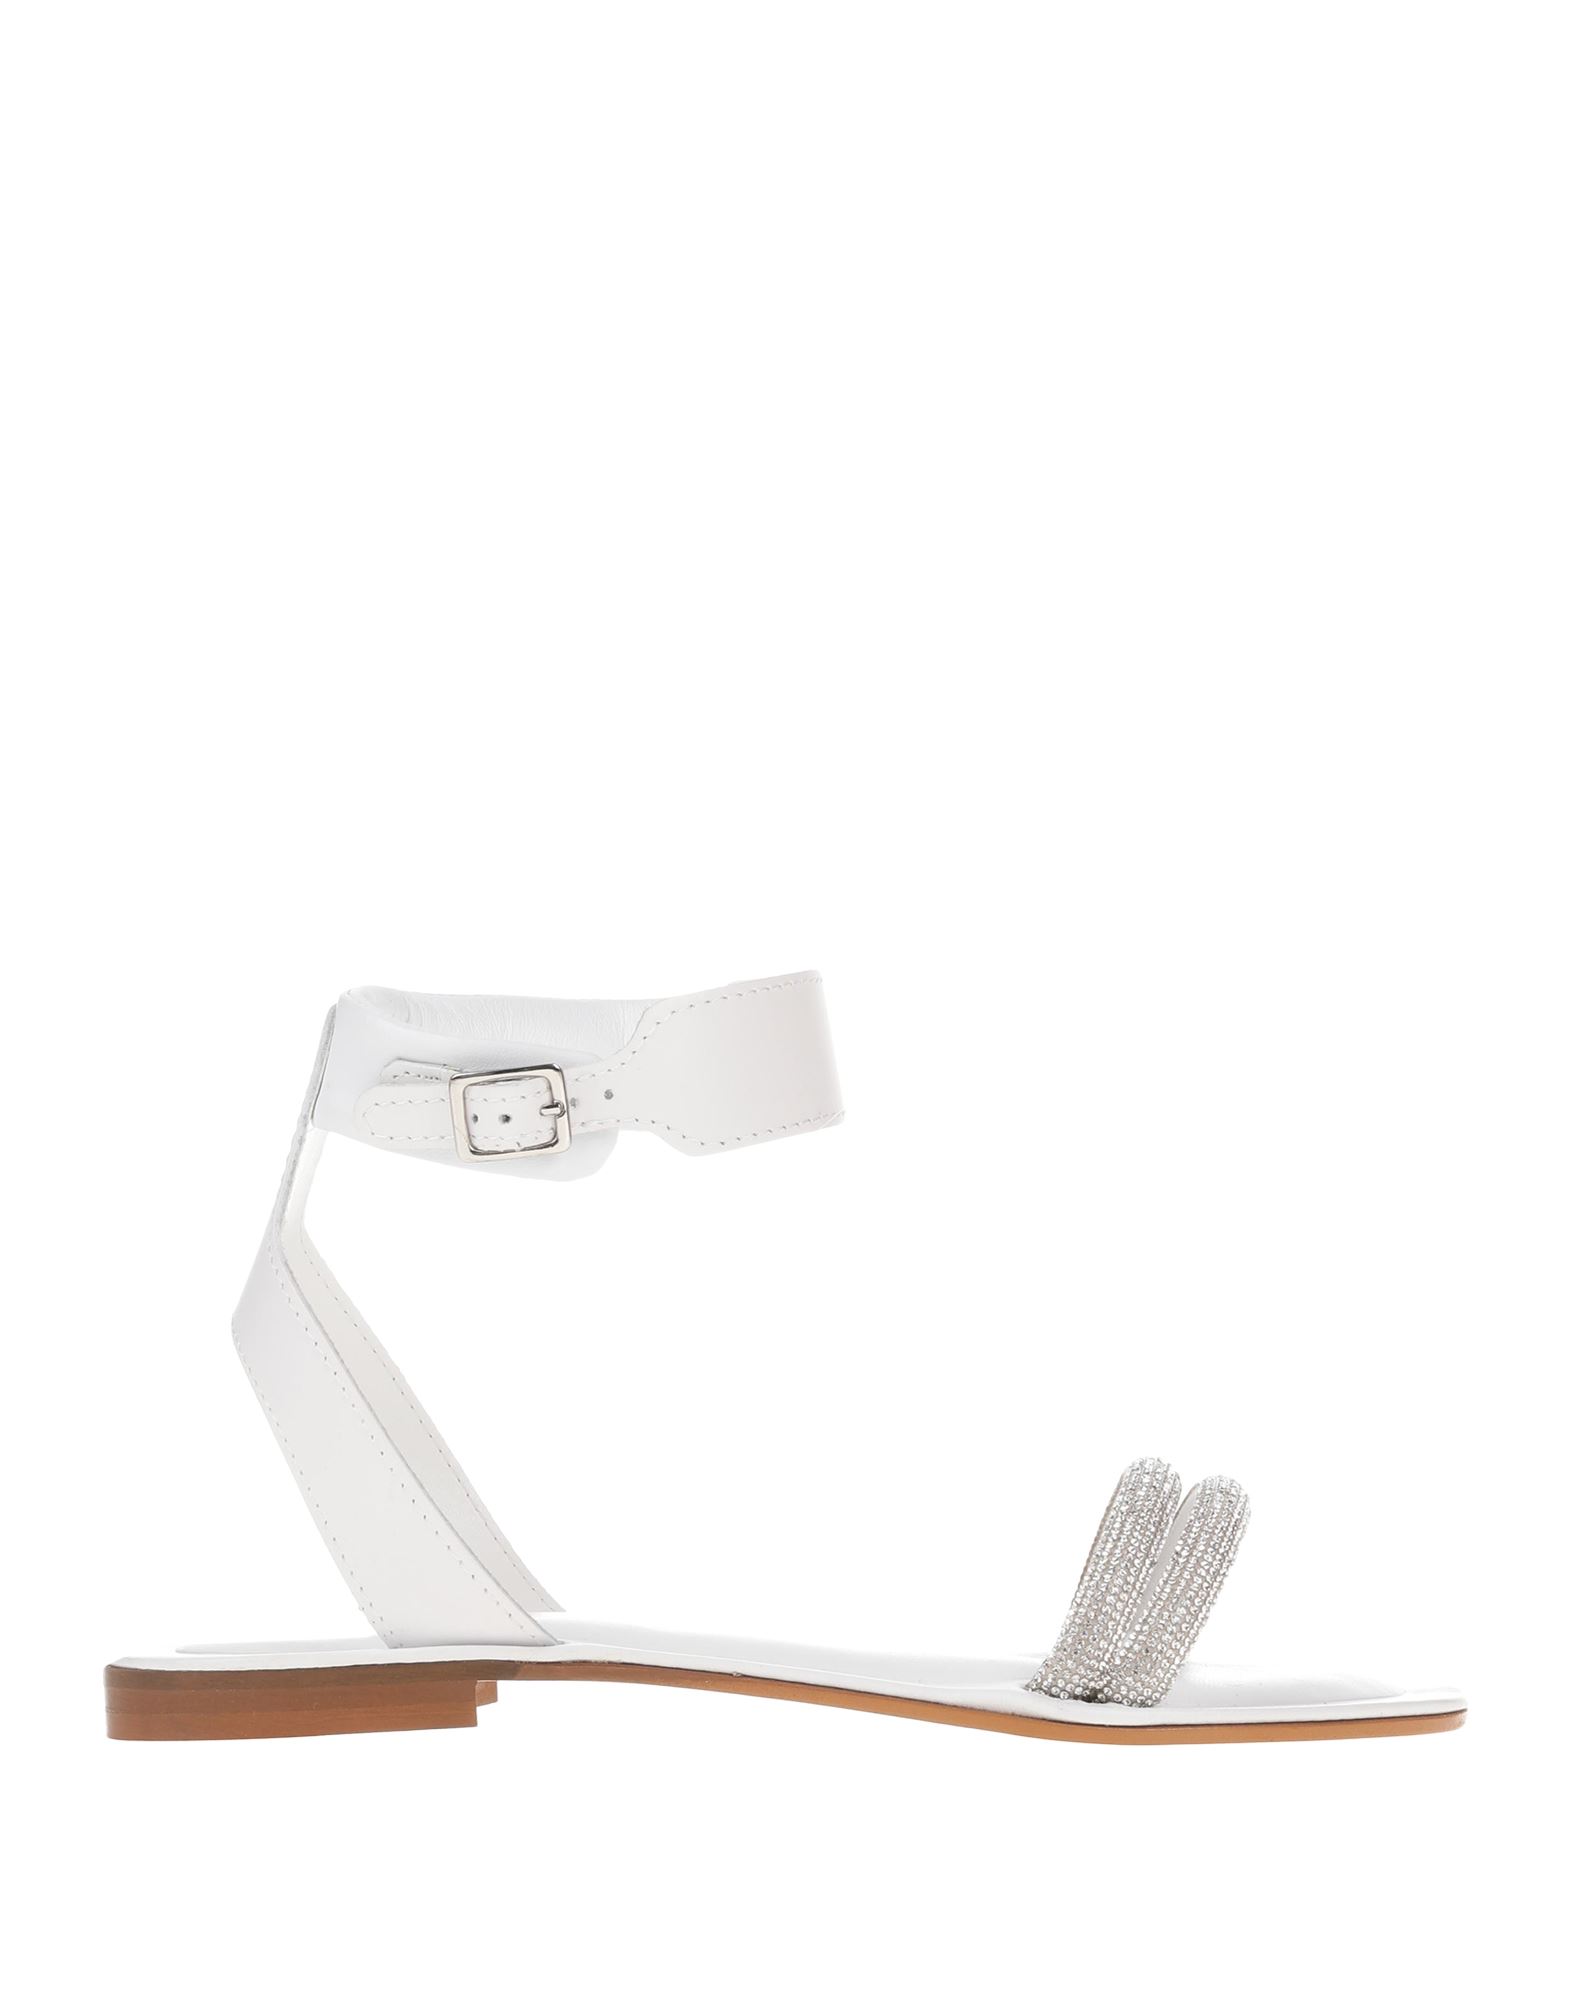 Cécile Woman Sandals White Size 10 Leather